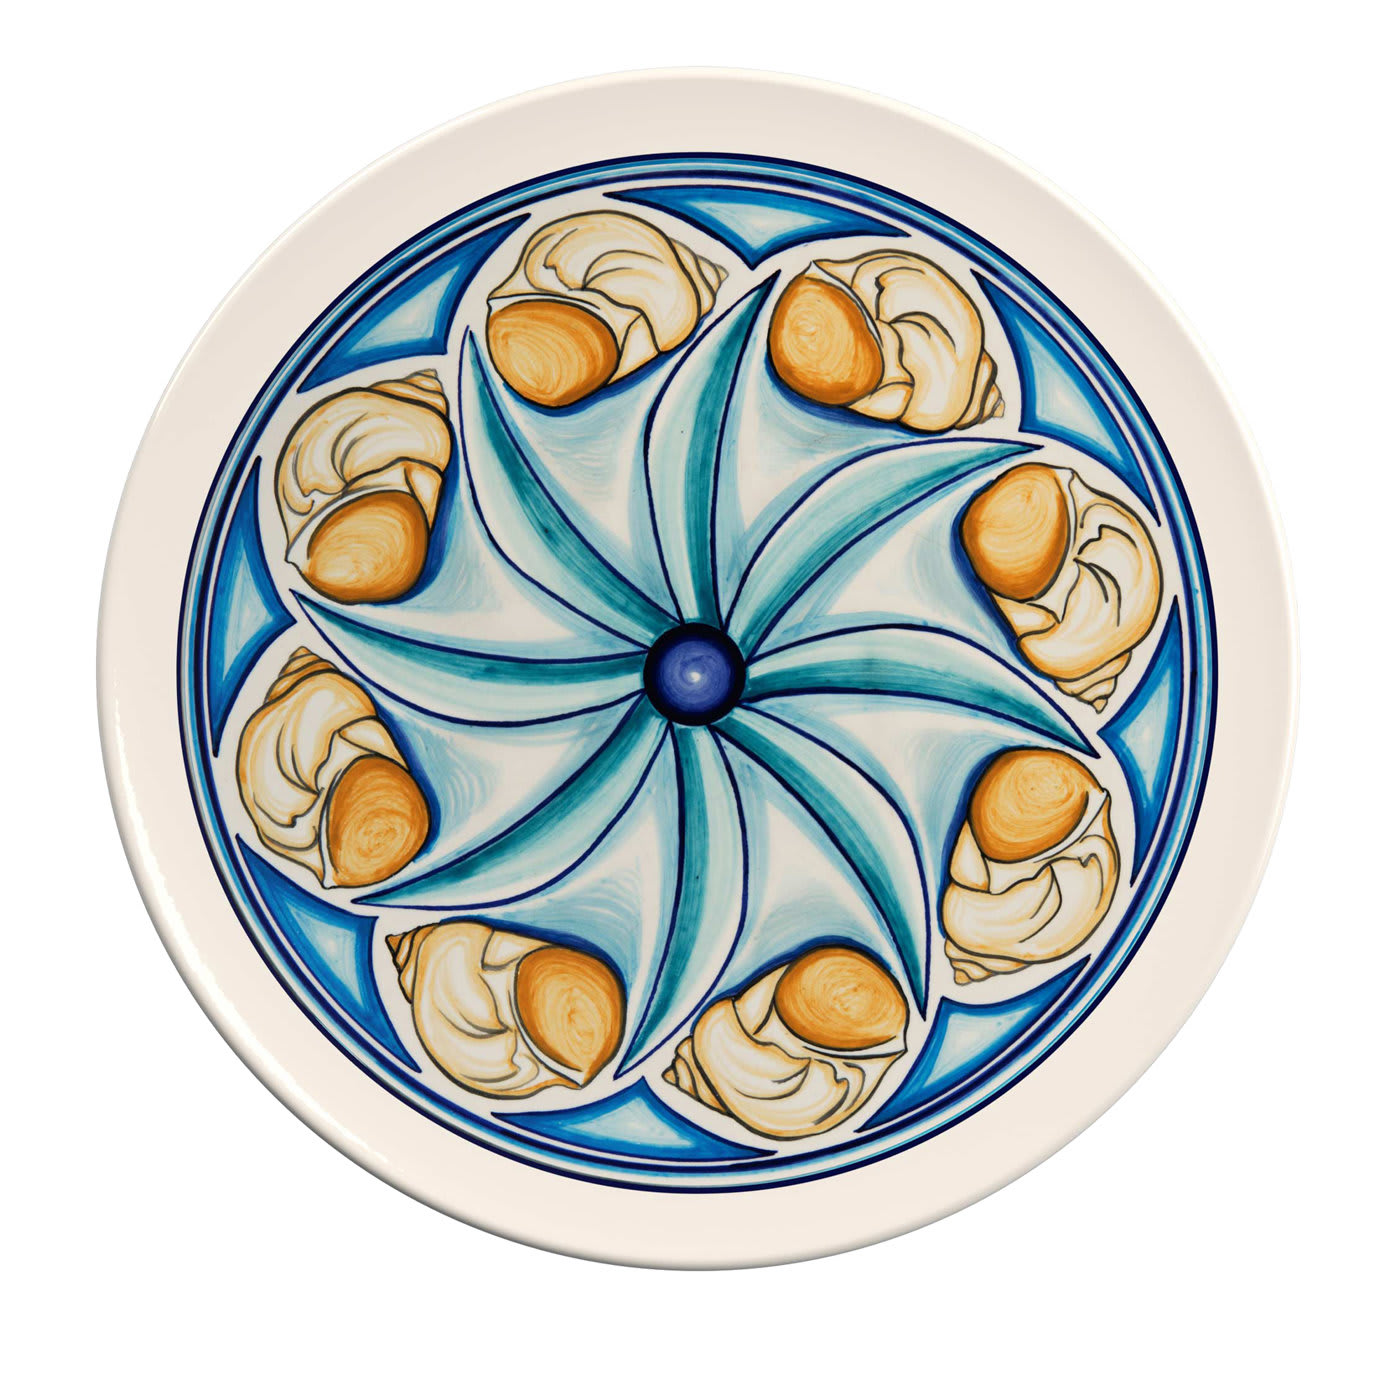 Colapesce Conchiglie Decorative Plate #3 - Crisodora